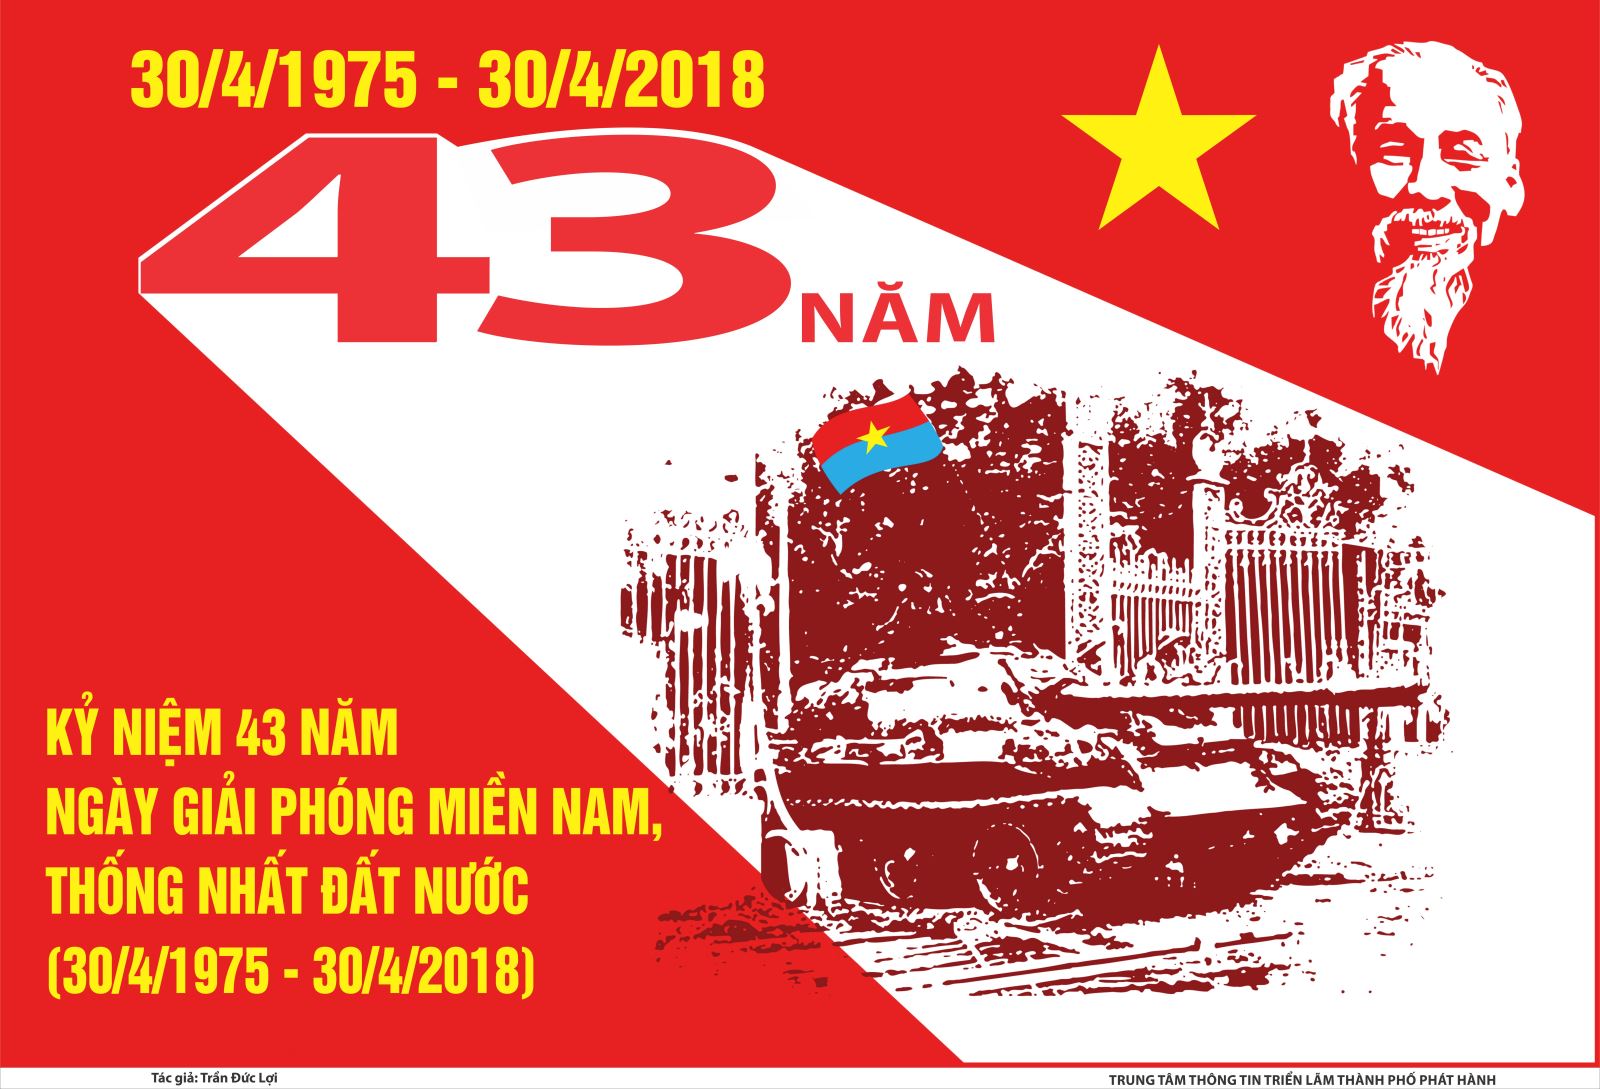 Tuyên truyền kỷ niệm 43 năm ngày giải phóng miền Nam, thống nhất đất nước (30/4/1975 - 30/4/2018)